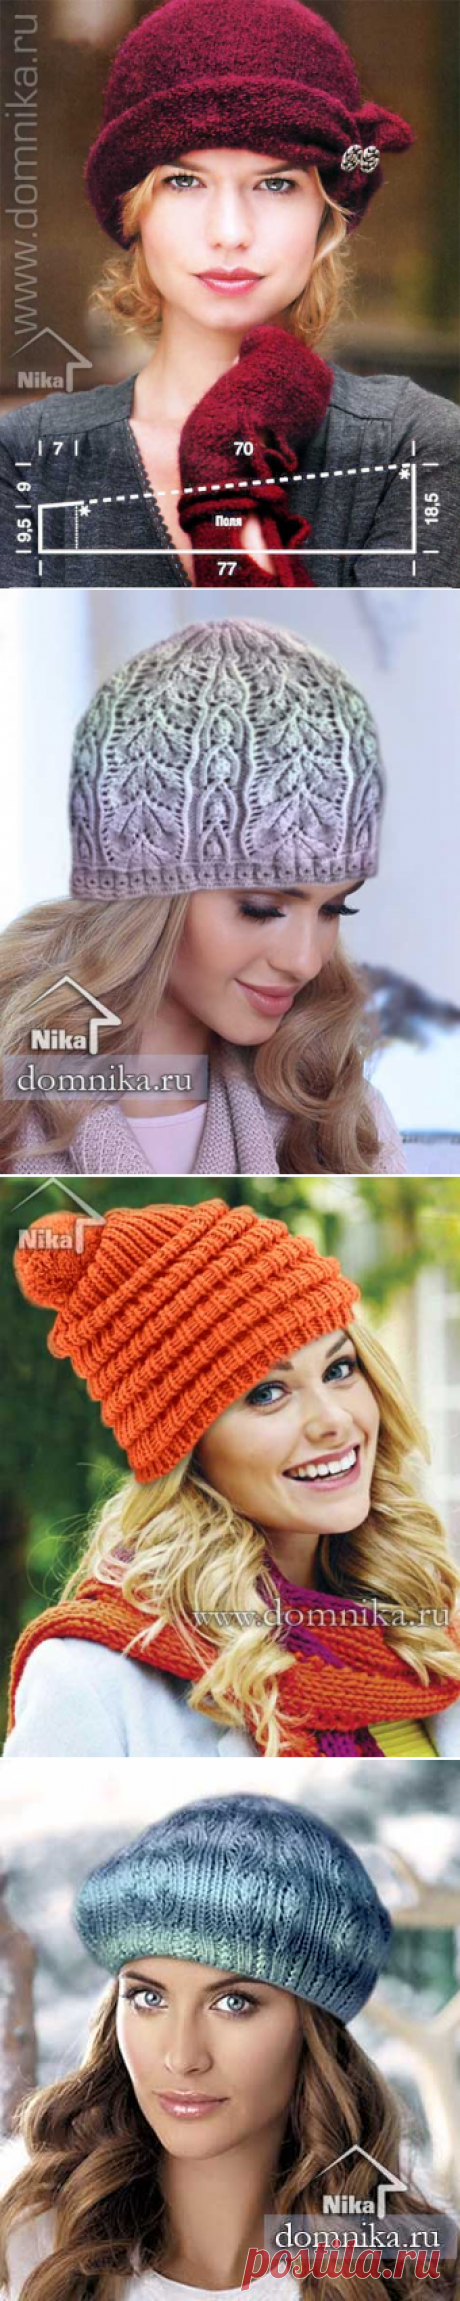 Модные модели шапок спицами I женские шапки на весну 2019